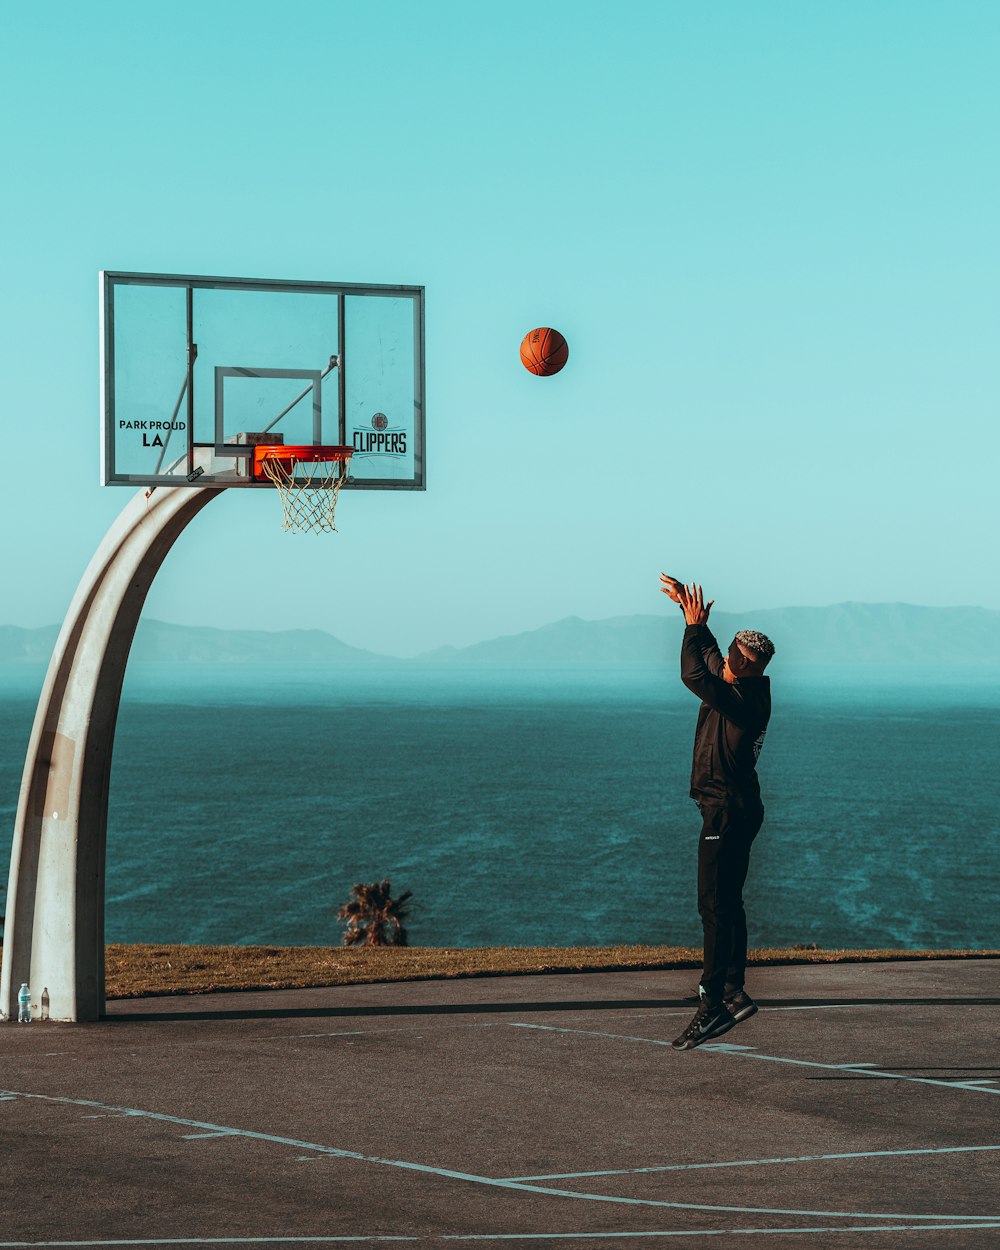 man in black jacket standing on basketball hoop